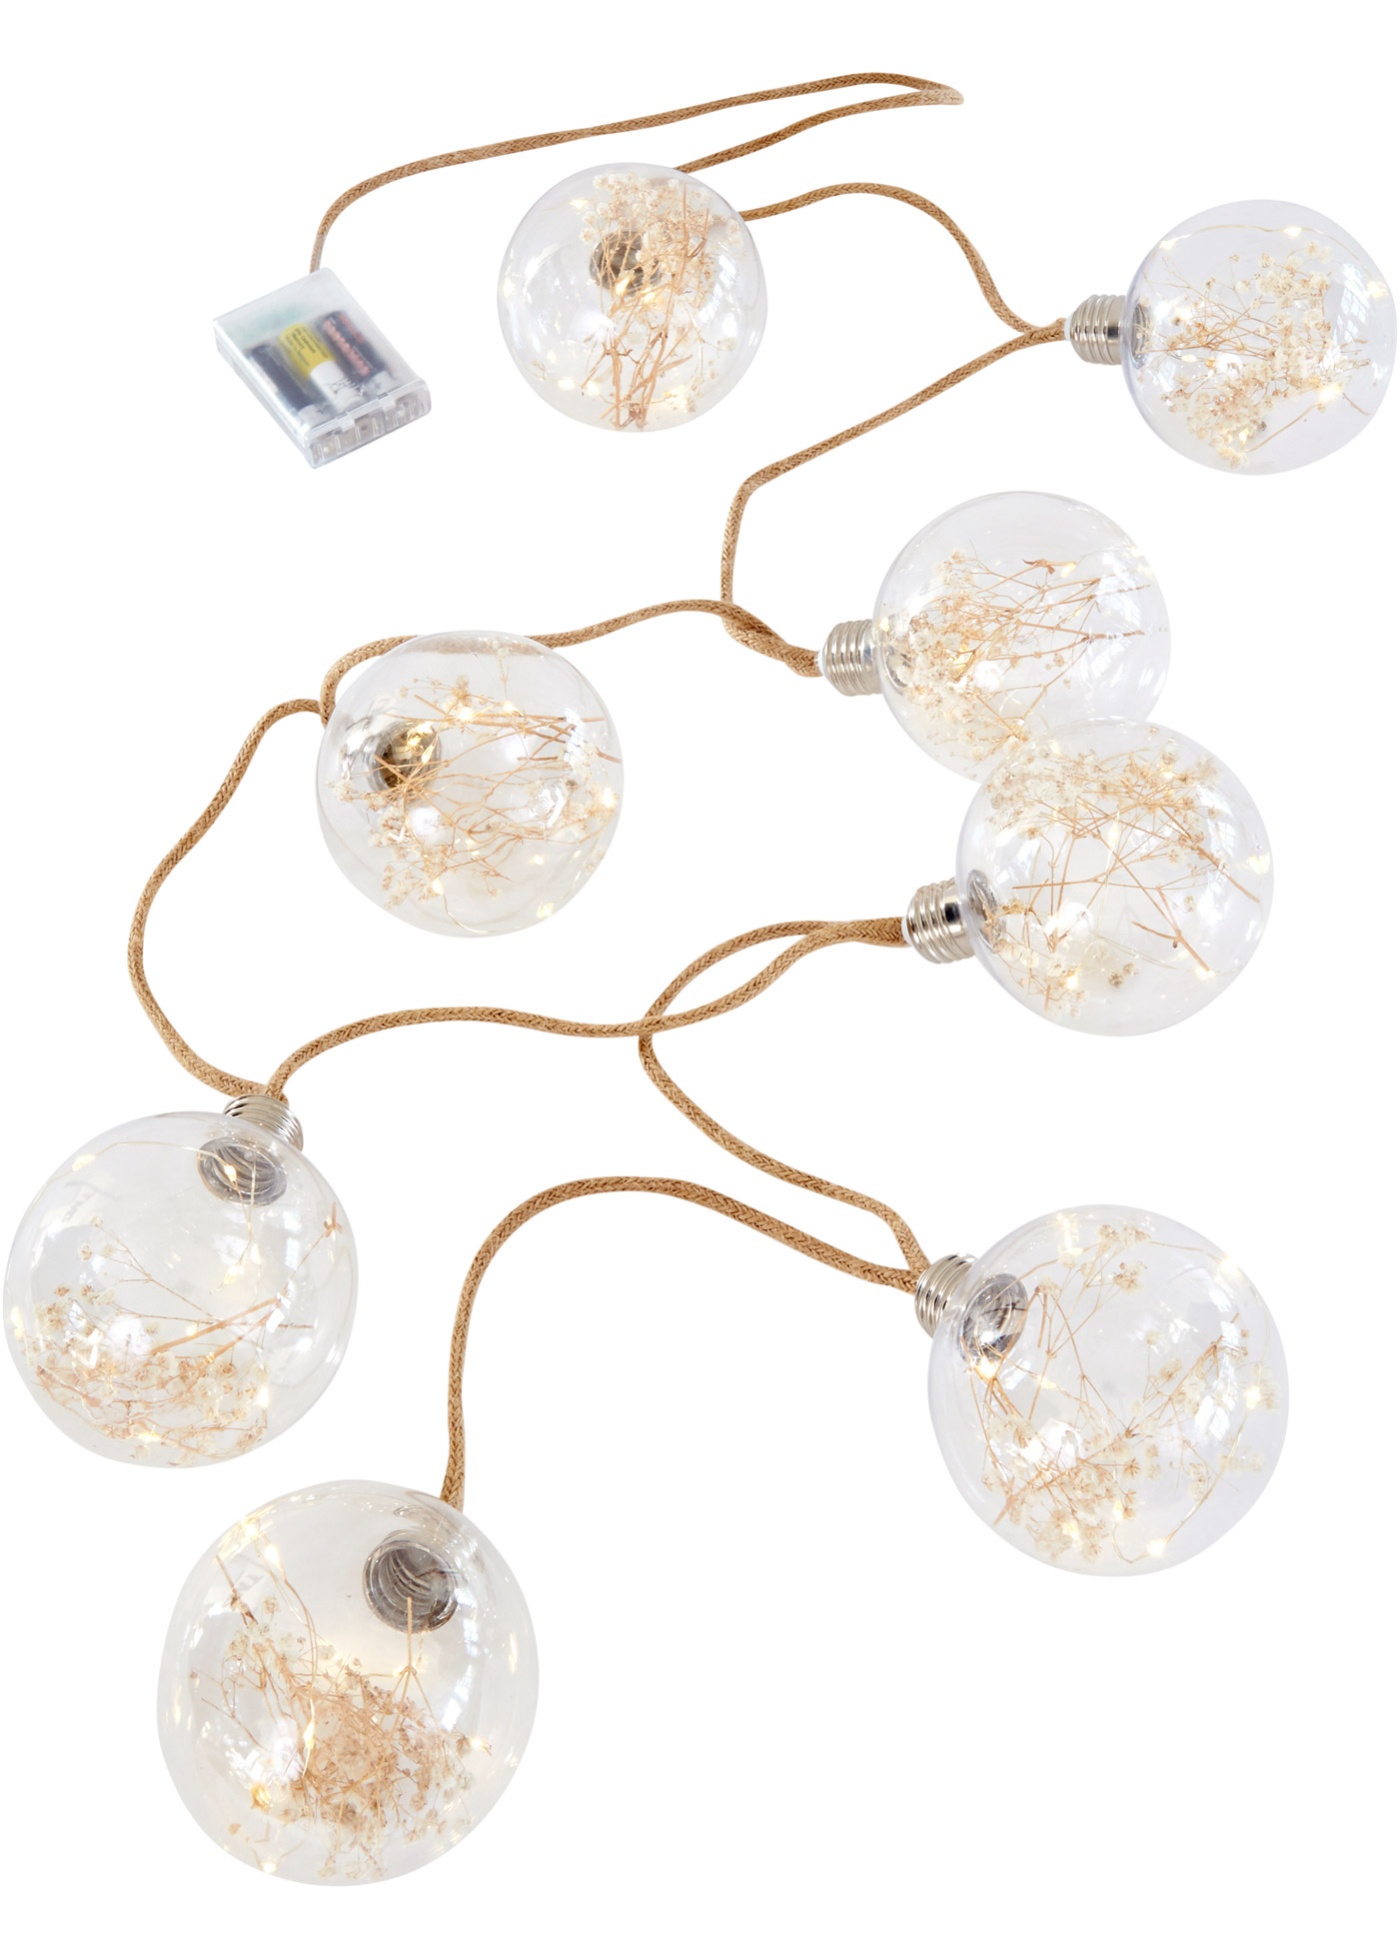 LED-Lichterkette mit 8 Kugeln mit Trockenblumen